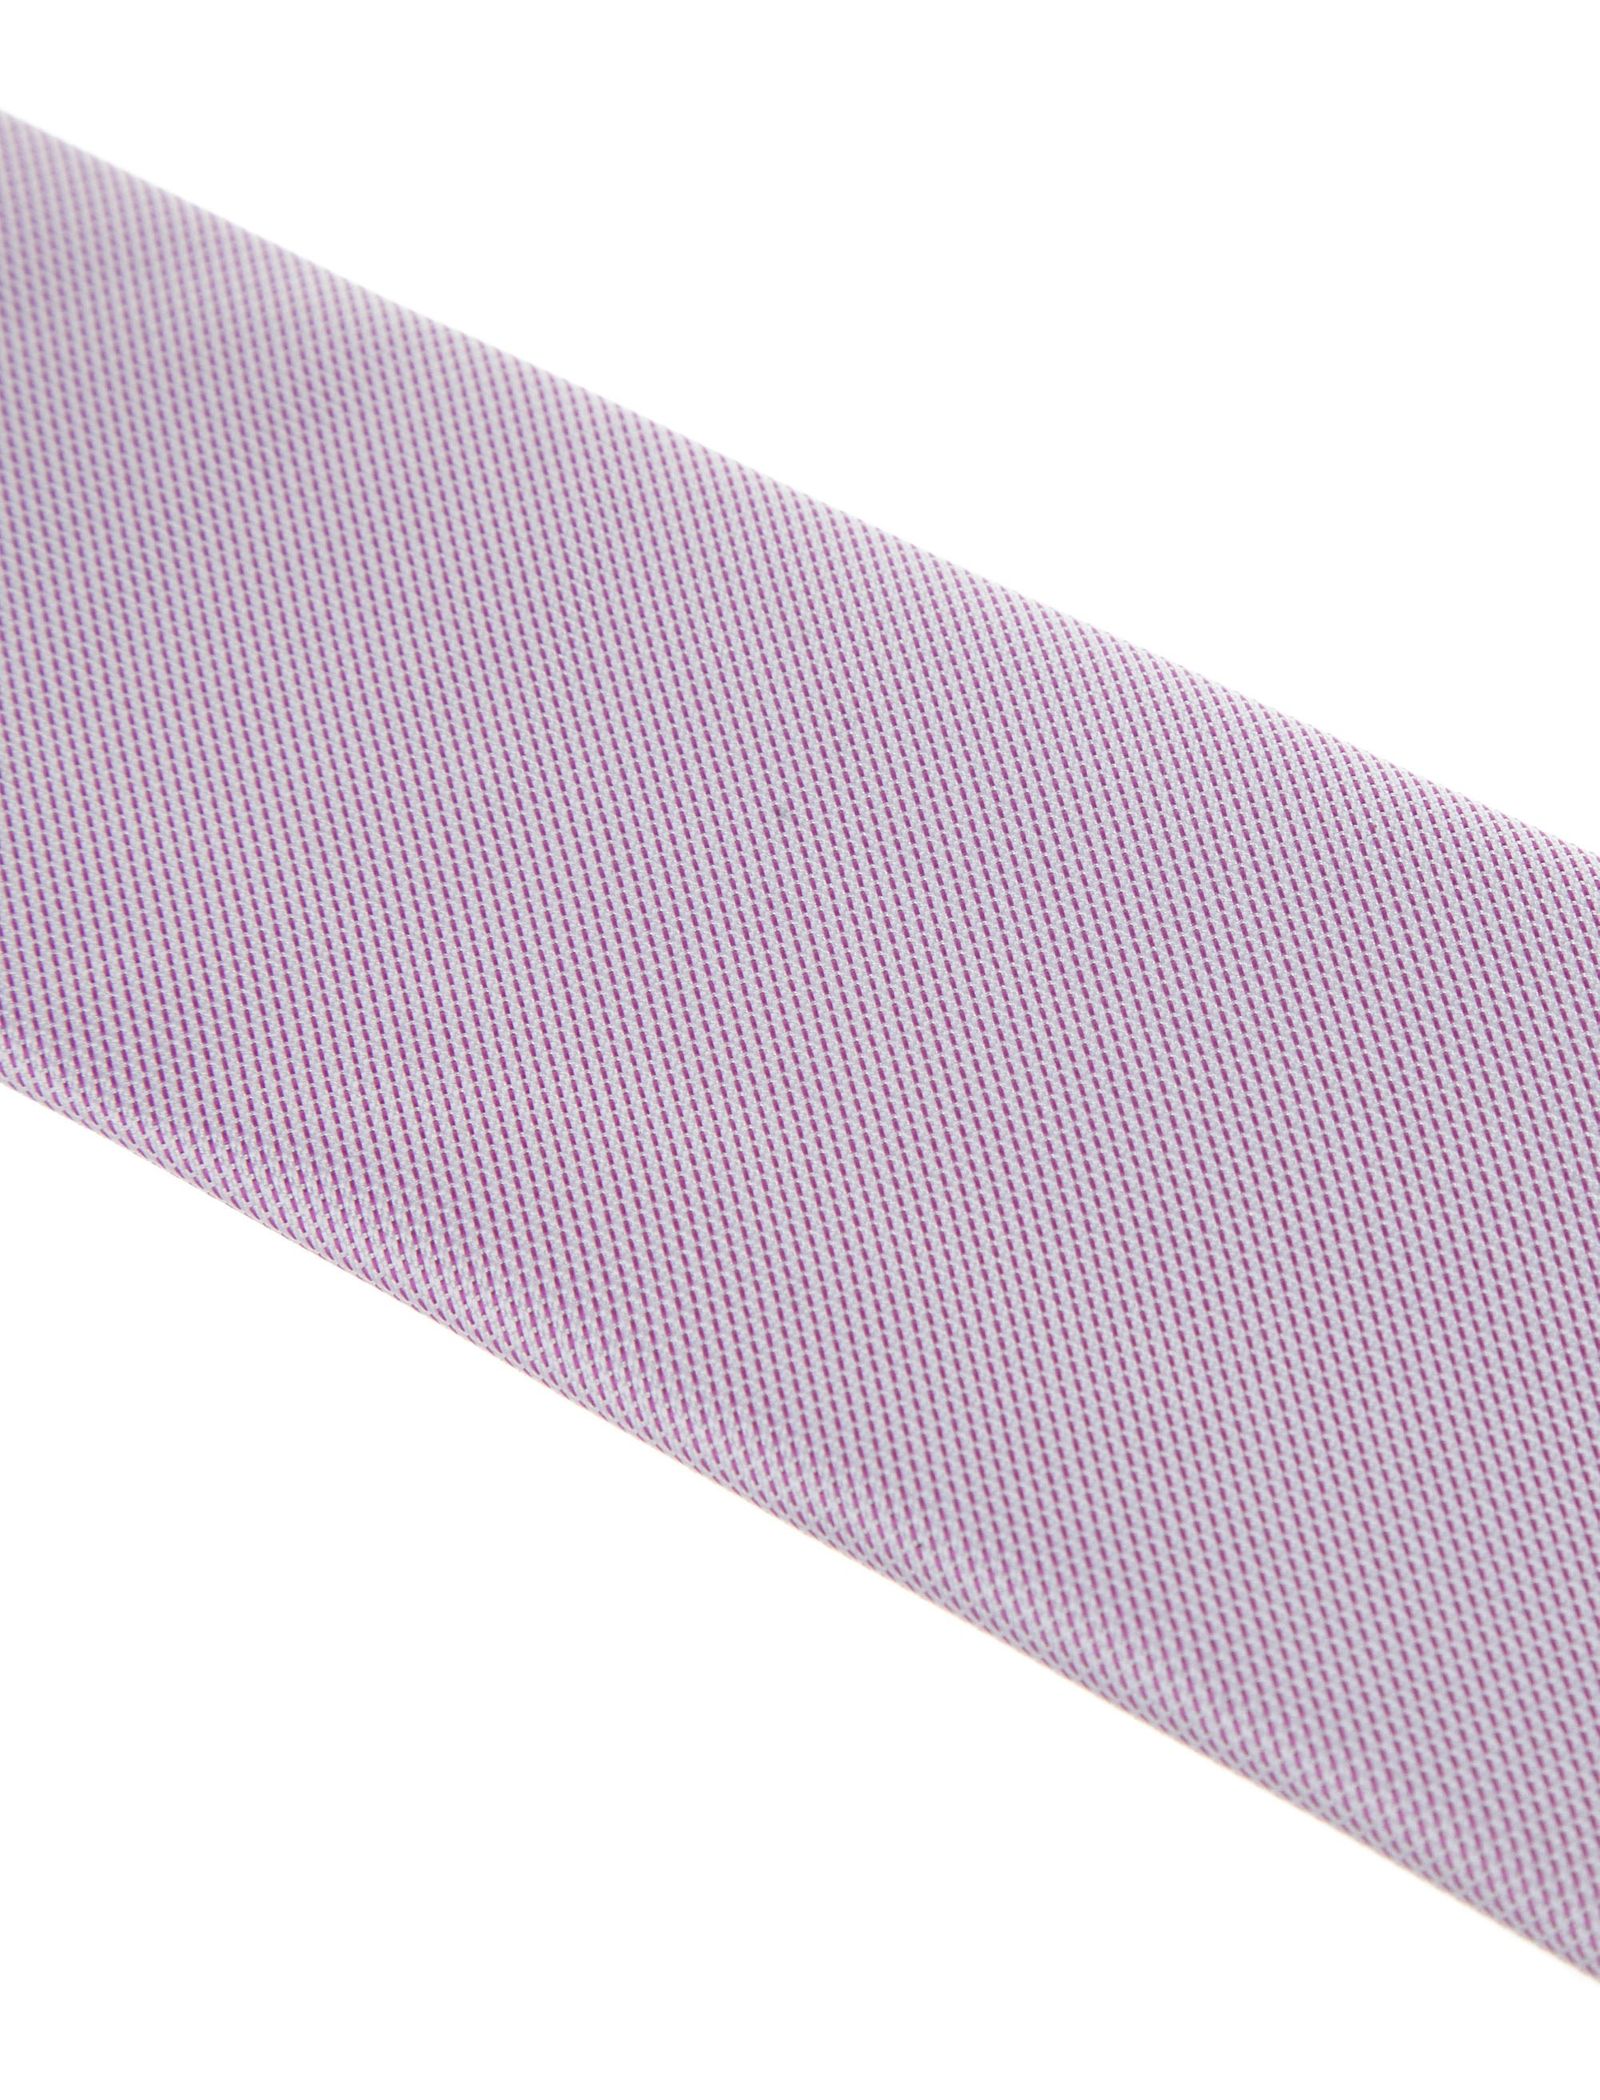 کراوات ساده مردانه - سلکتد تک سایز -  - 4